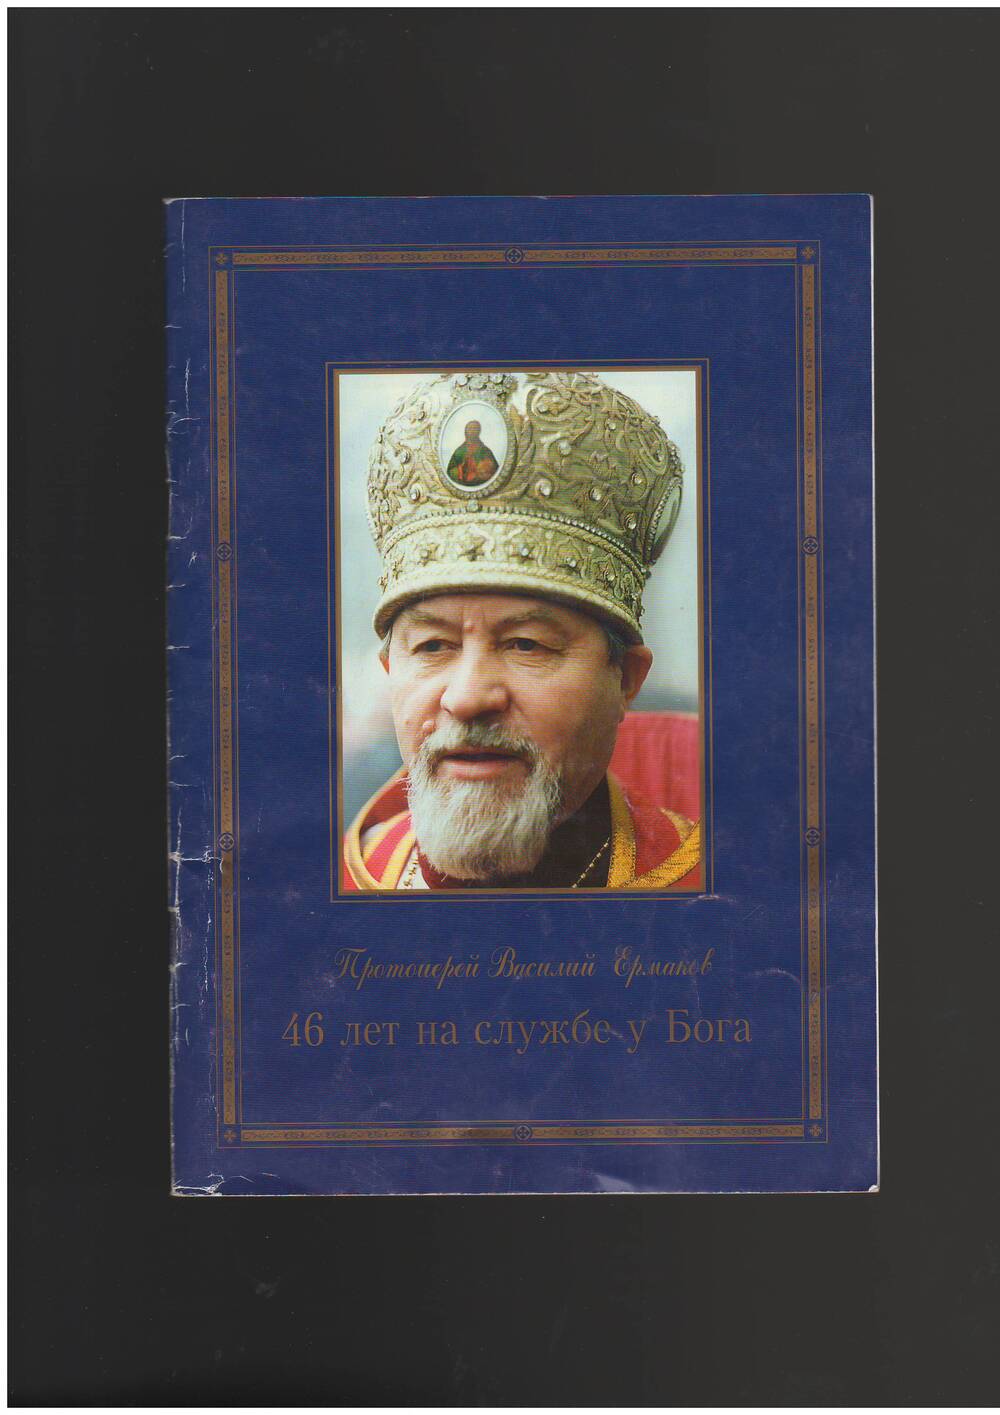 Протоиерей Василий Ермаков. Брошюра 46 лет на службе у Бога. Санкт-Петербург, 1999 года